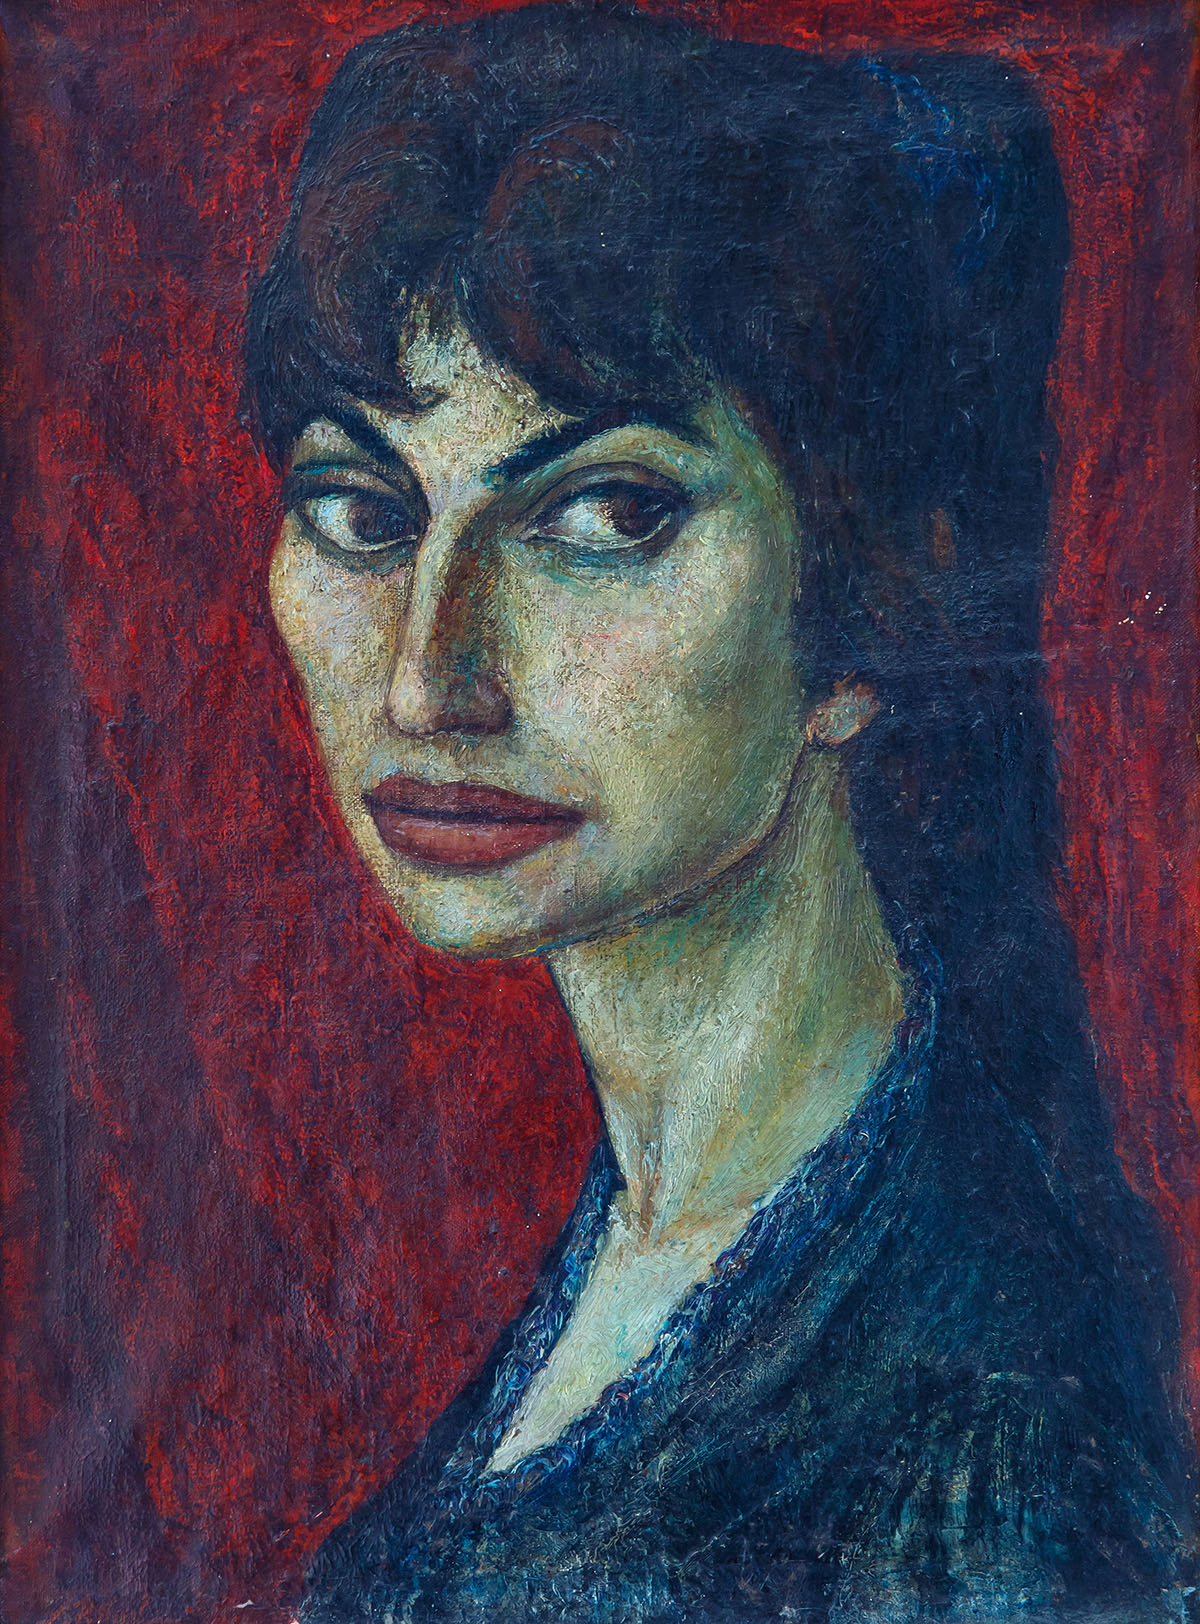 Autoportrait, 1966 and Lumturi in her Studio Apartment, 1999.